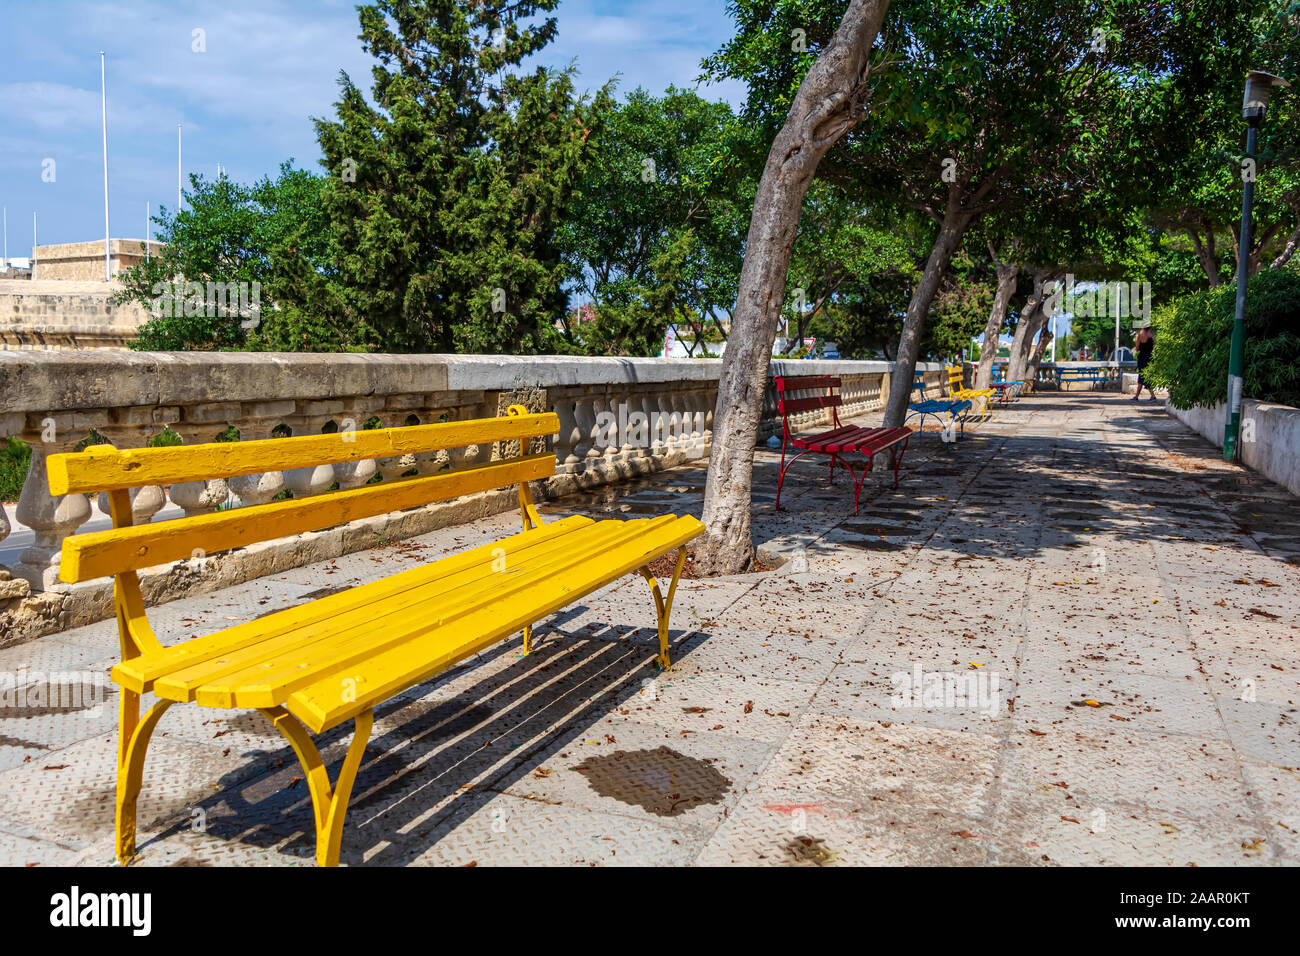 Banc de jardin public en jaune à Cospicua, Malte. Banque D'Images